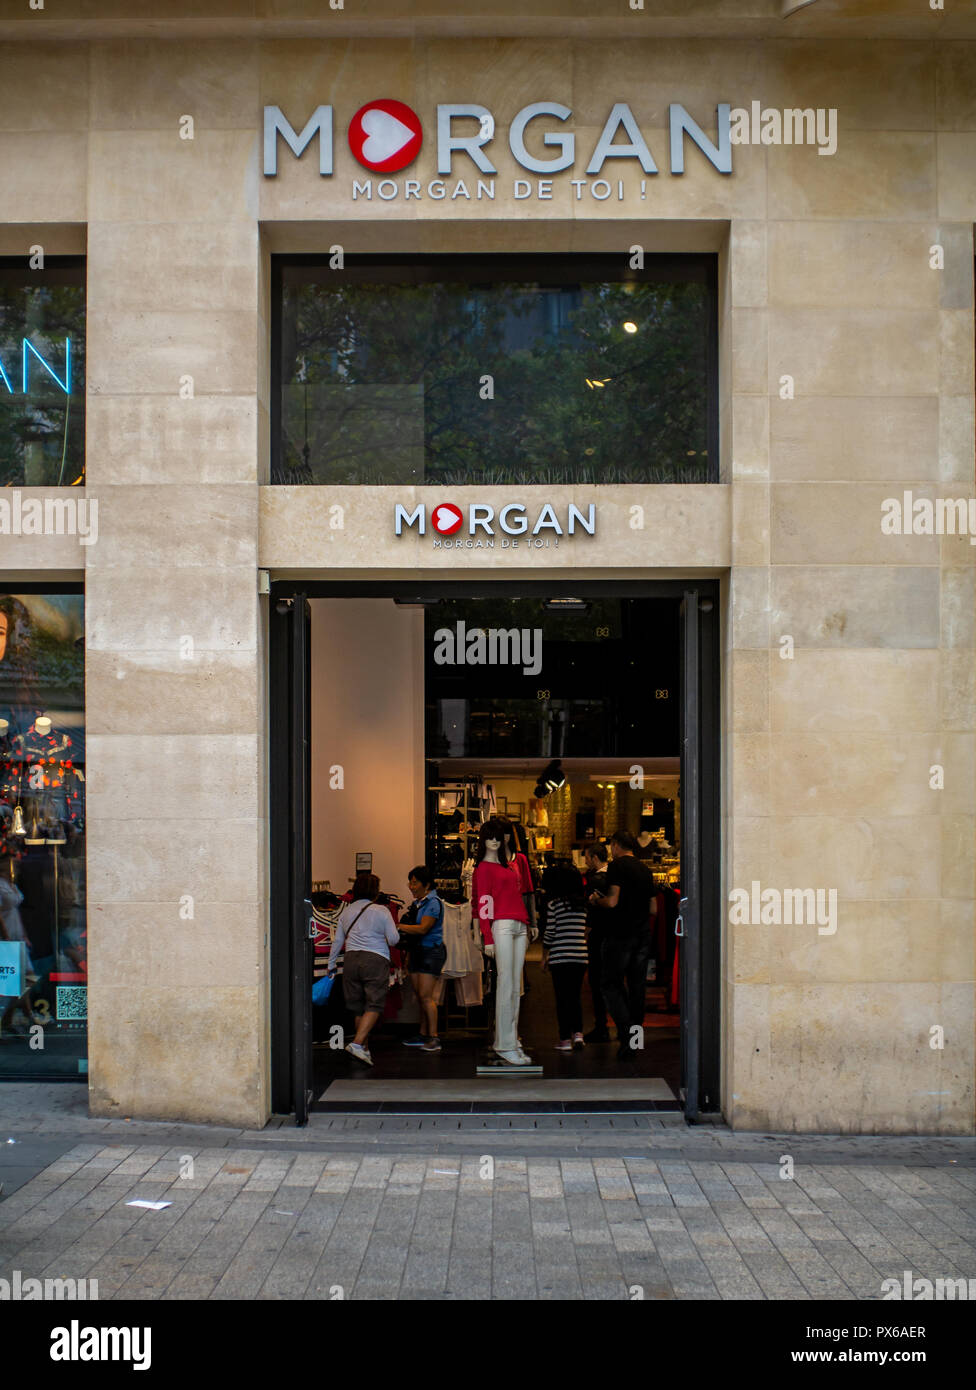 tienda de comestibles Dar permiso Ceniza París, Francia - 15 de agosto de 2018 : Morgan de Toi tienda en París.  Morgan de Toi es una marca de ropa, propiedad de la compañía francesa Morgan  SA Fotografía de stock - Alamy